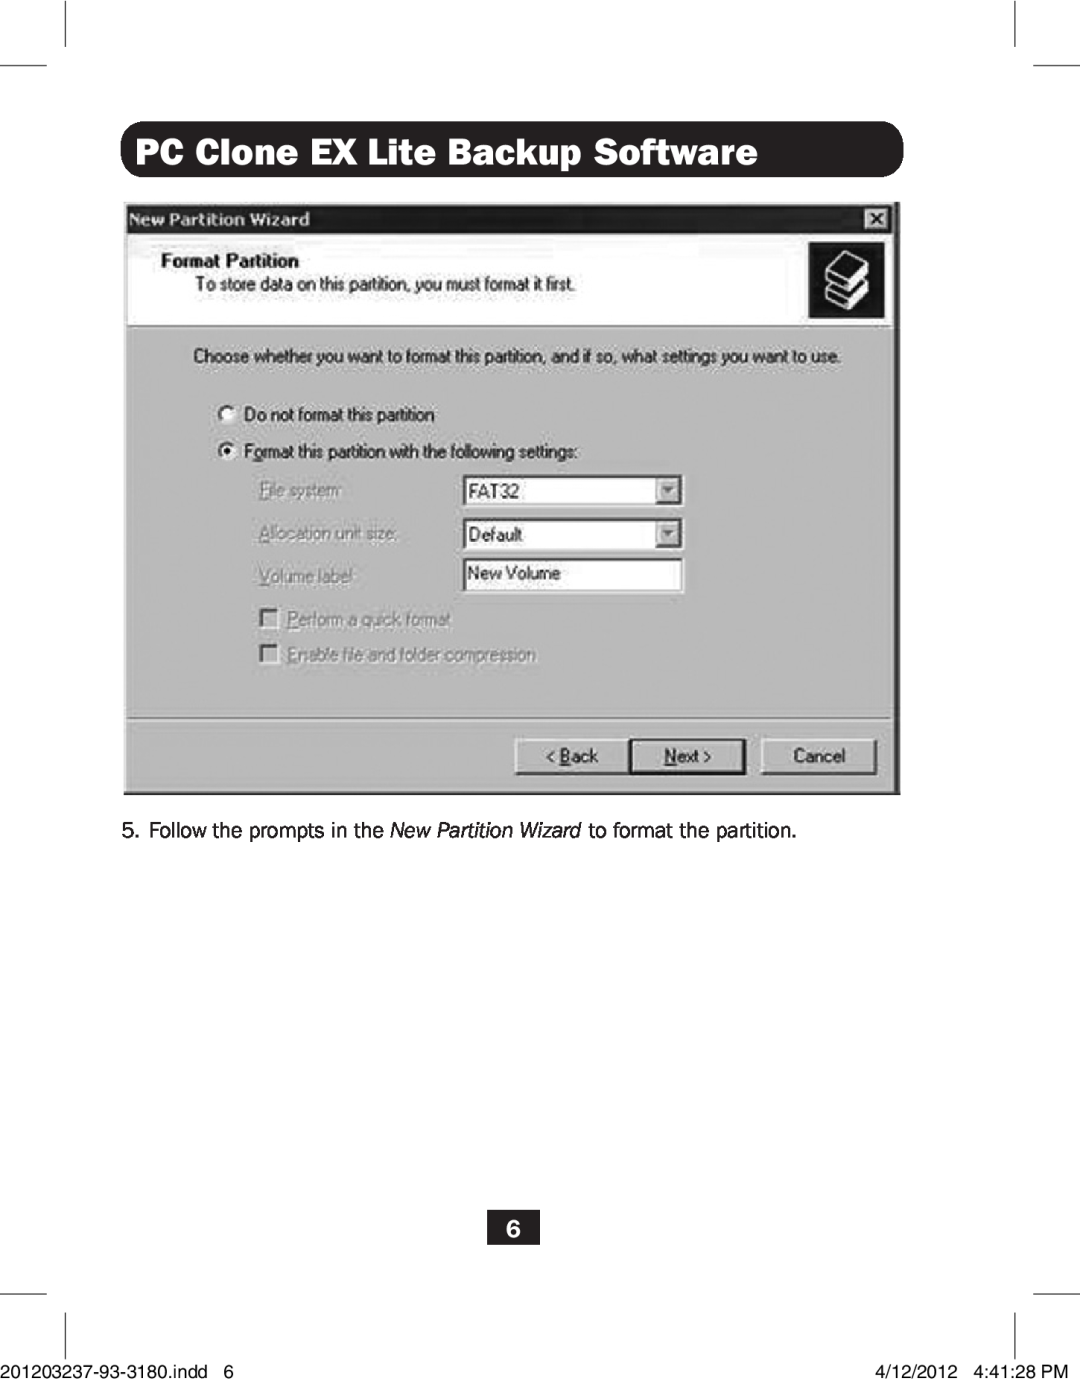 Tripp Lite U238-000-1 owner manual PC Clone EX Lite Backup Software 